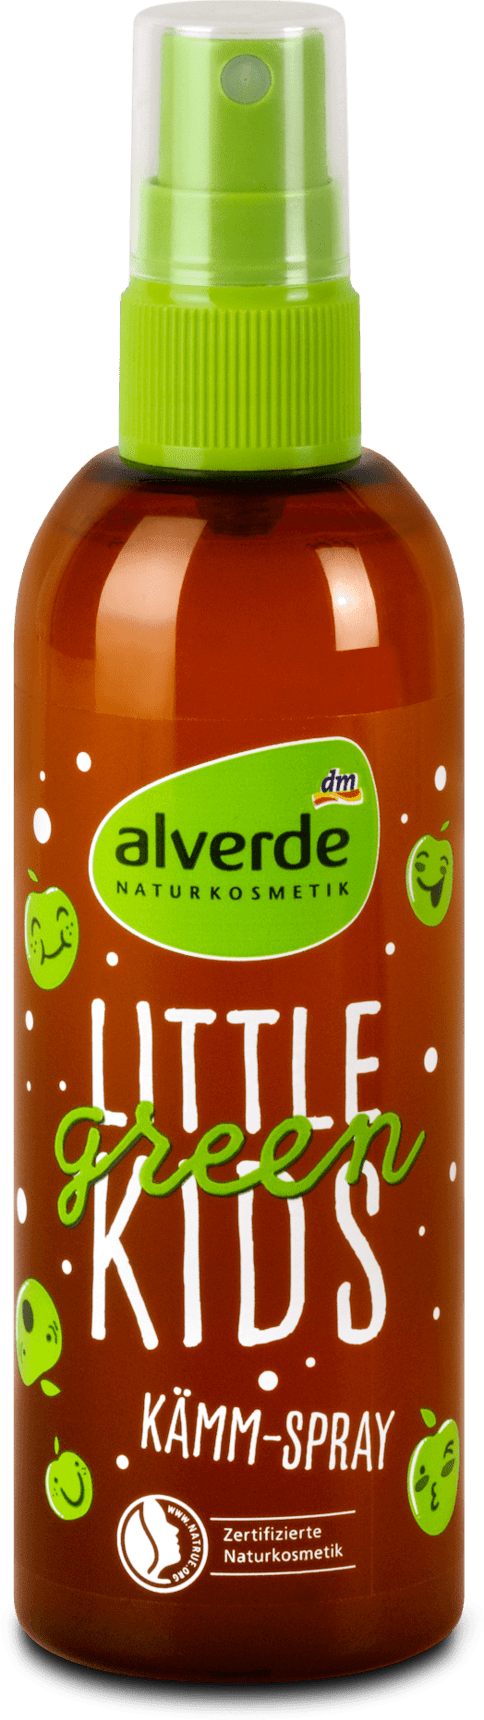 alverde NATURKOSMETIK Little Green Kids combing spray, 150 ml